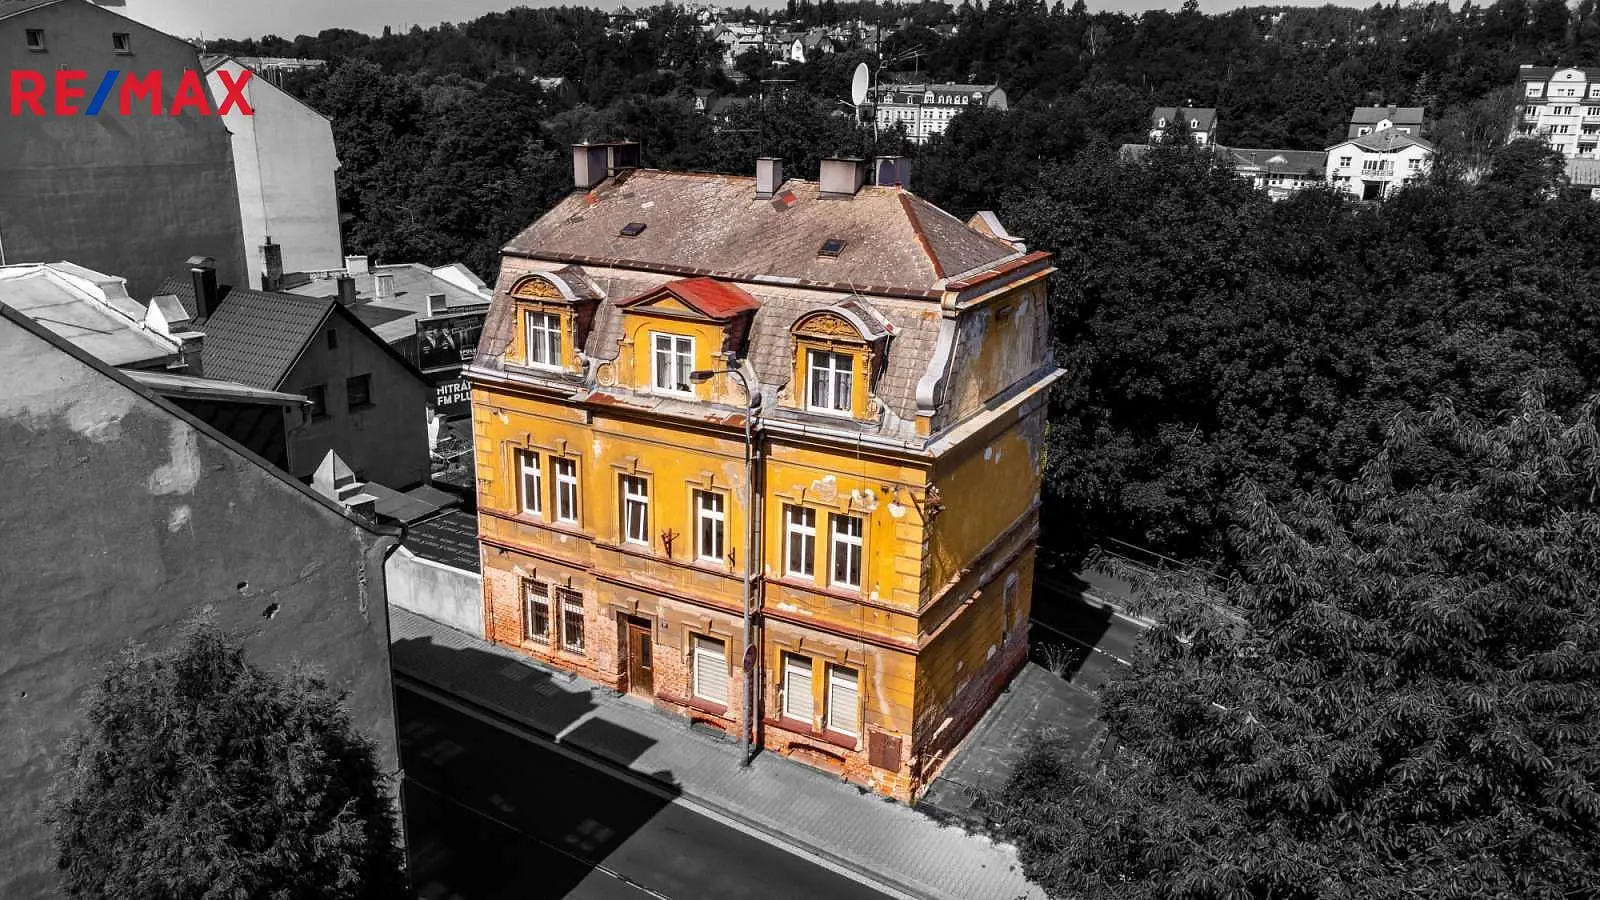 Prašná, Karlovy Vary - Drahovice